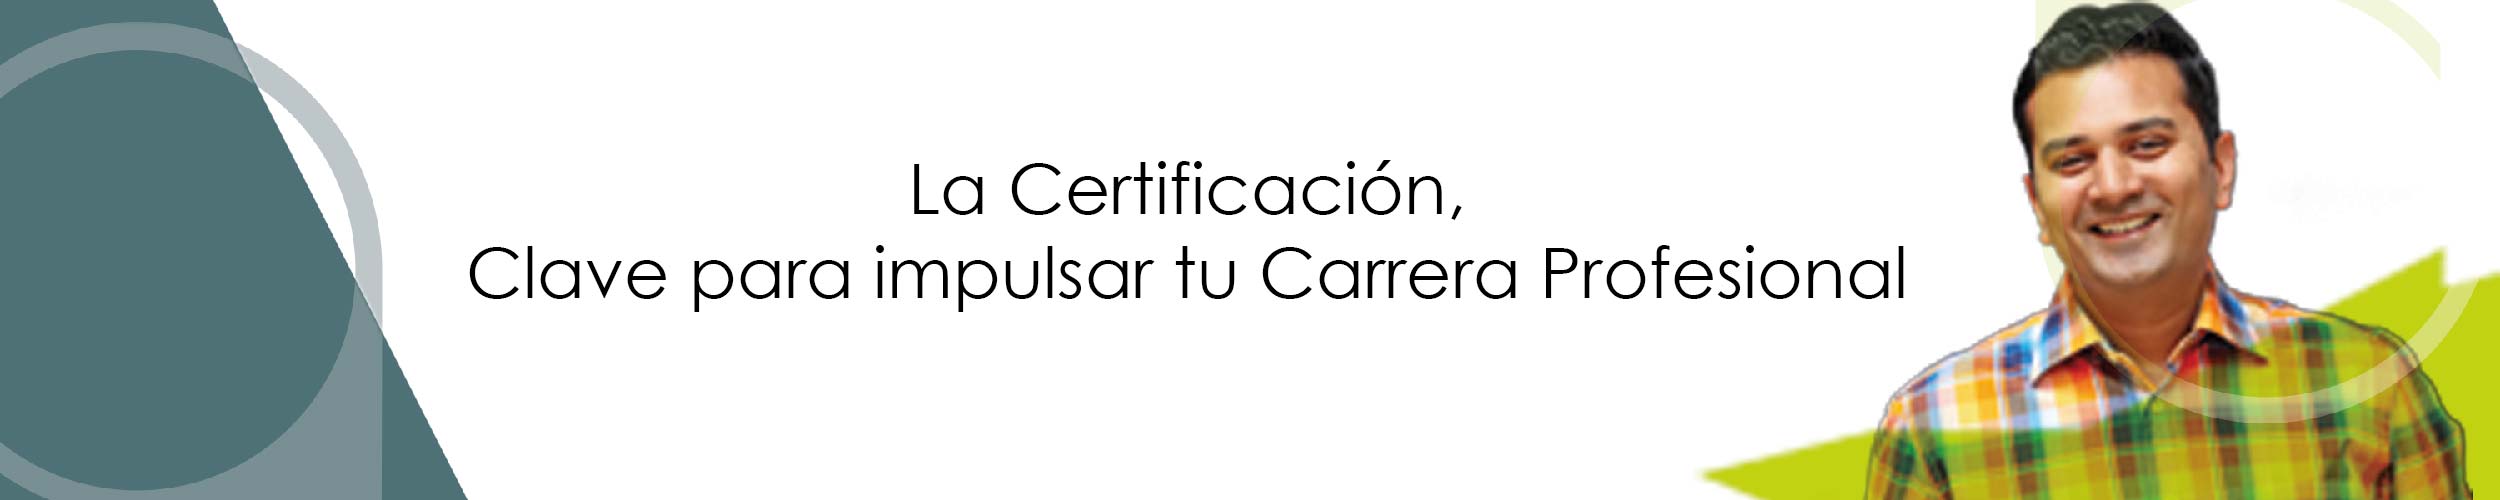 La Certificación, Clave para impulsar tu carrera profesional